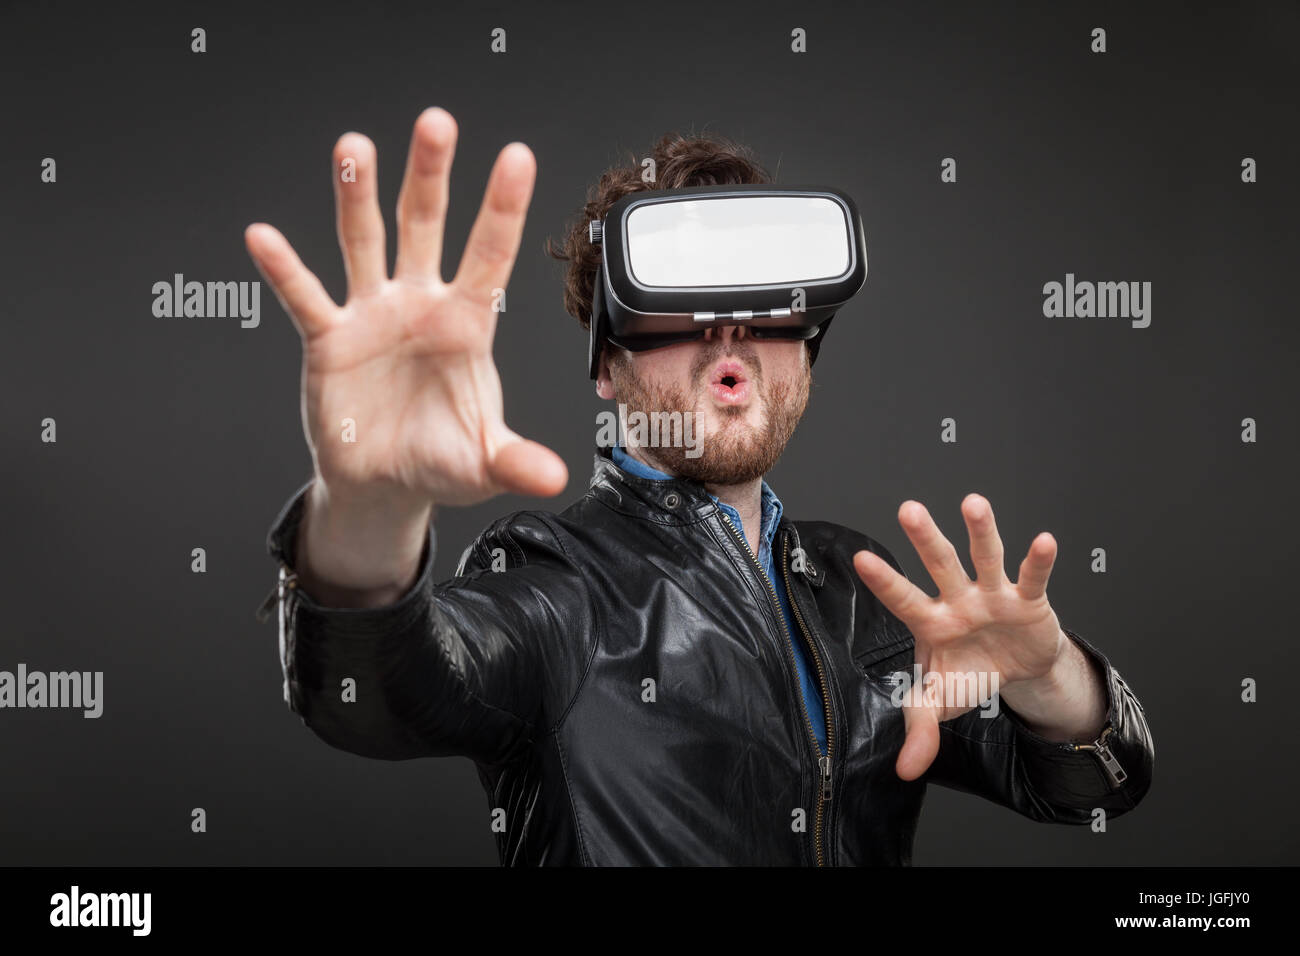 El hombre llevaba gafas de realidad virtual Foto de stock